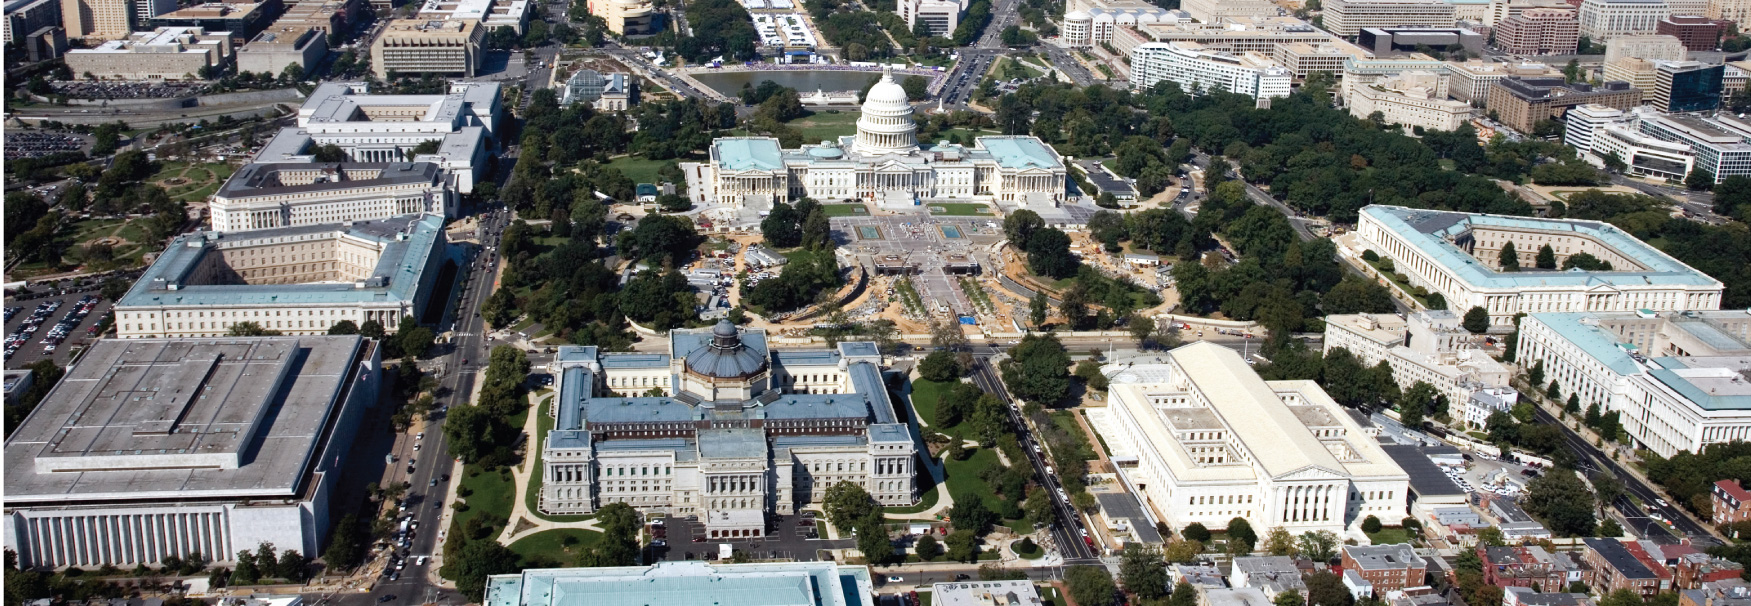 美国国会大厦的航拍图像。